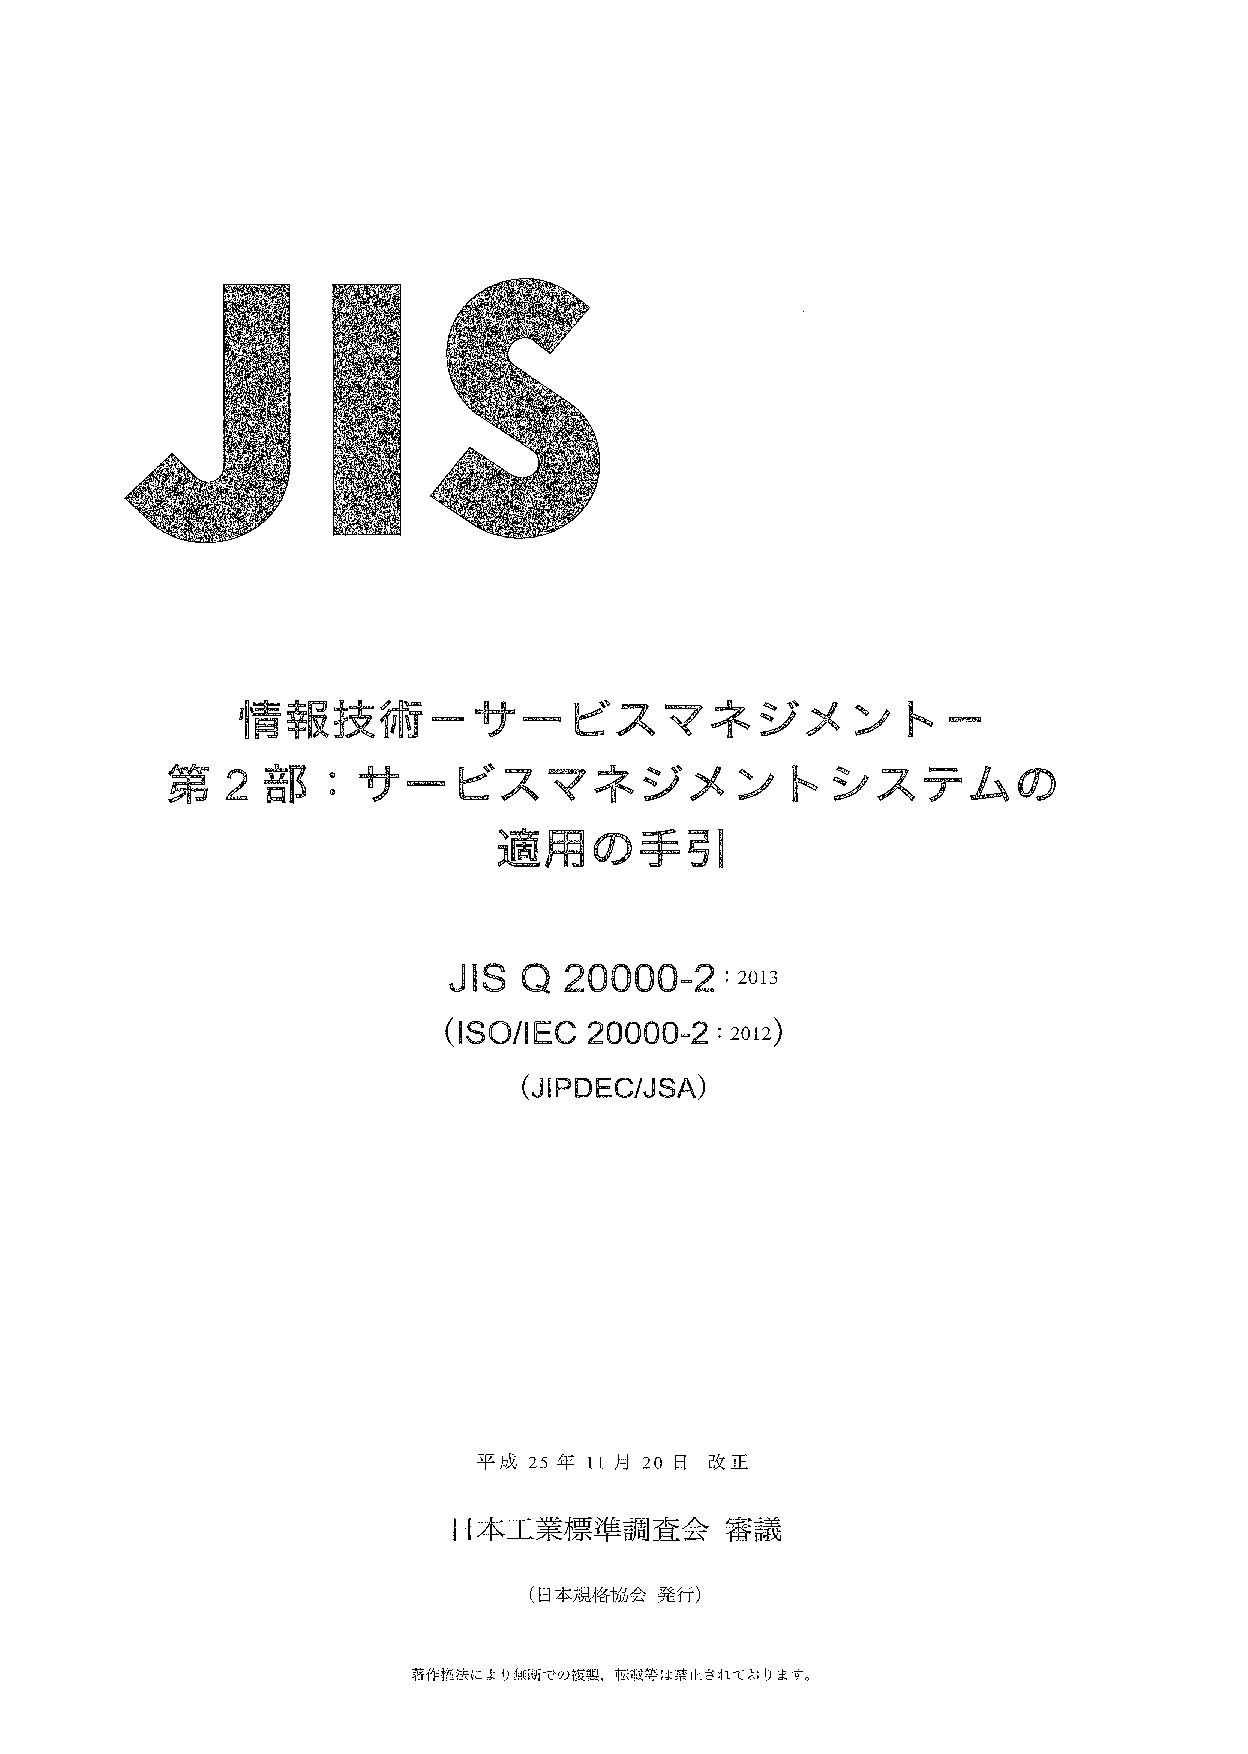 JIS Q 20000-2:2013封面图